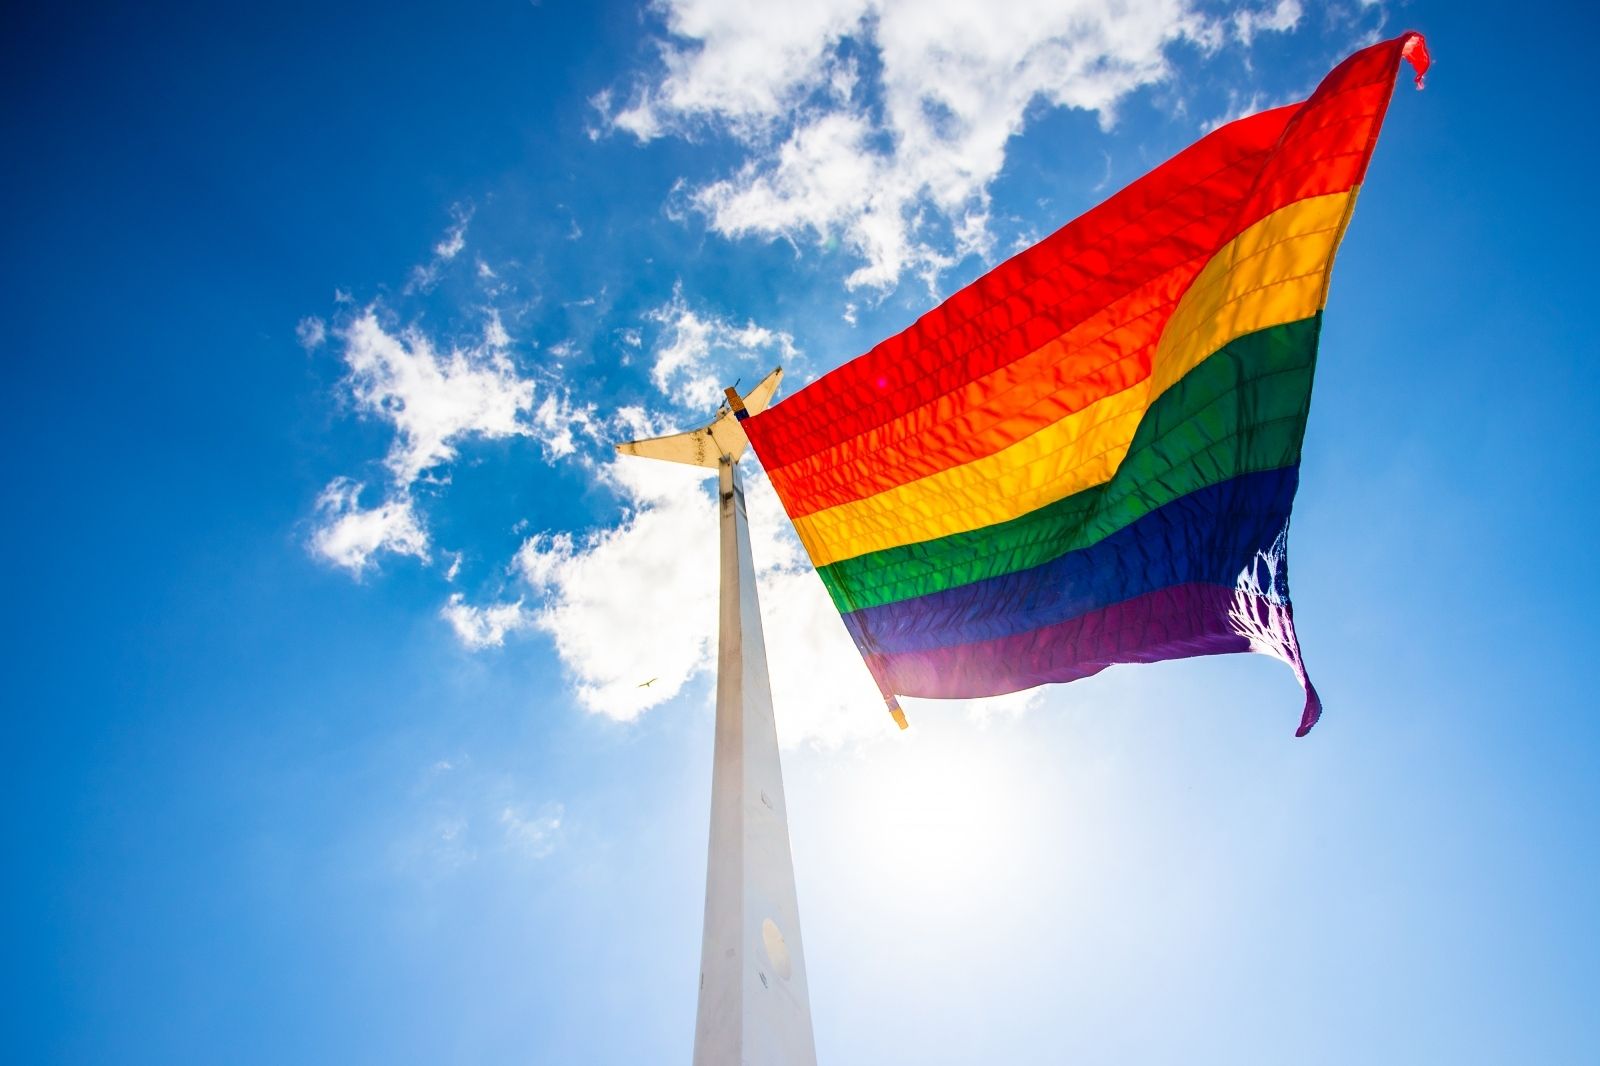 14.06.2021., Split - Pripadnici LGBT zajednice u Splitu jutros su na Matejuski podigli zastavu duginih boja.
Photo: Milan Sabic/PIXSELL